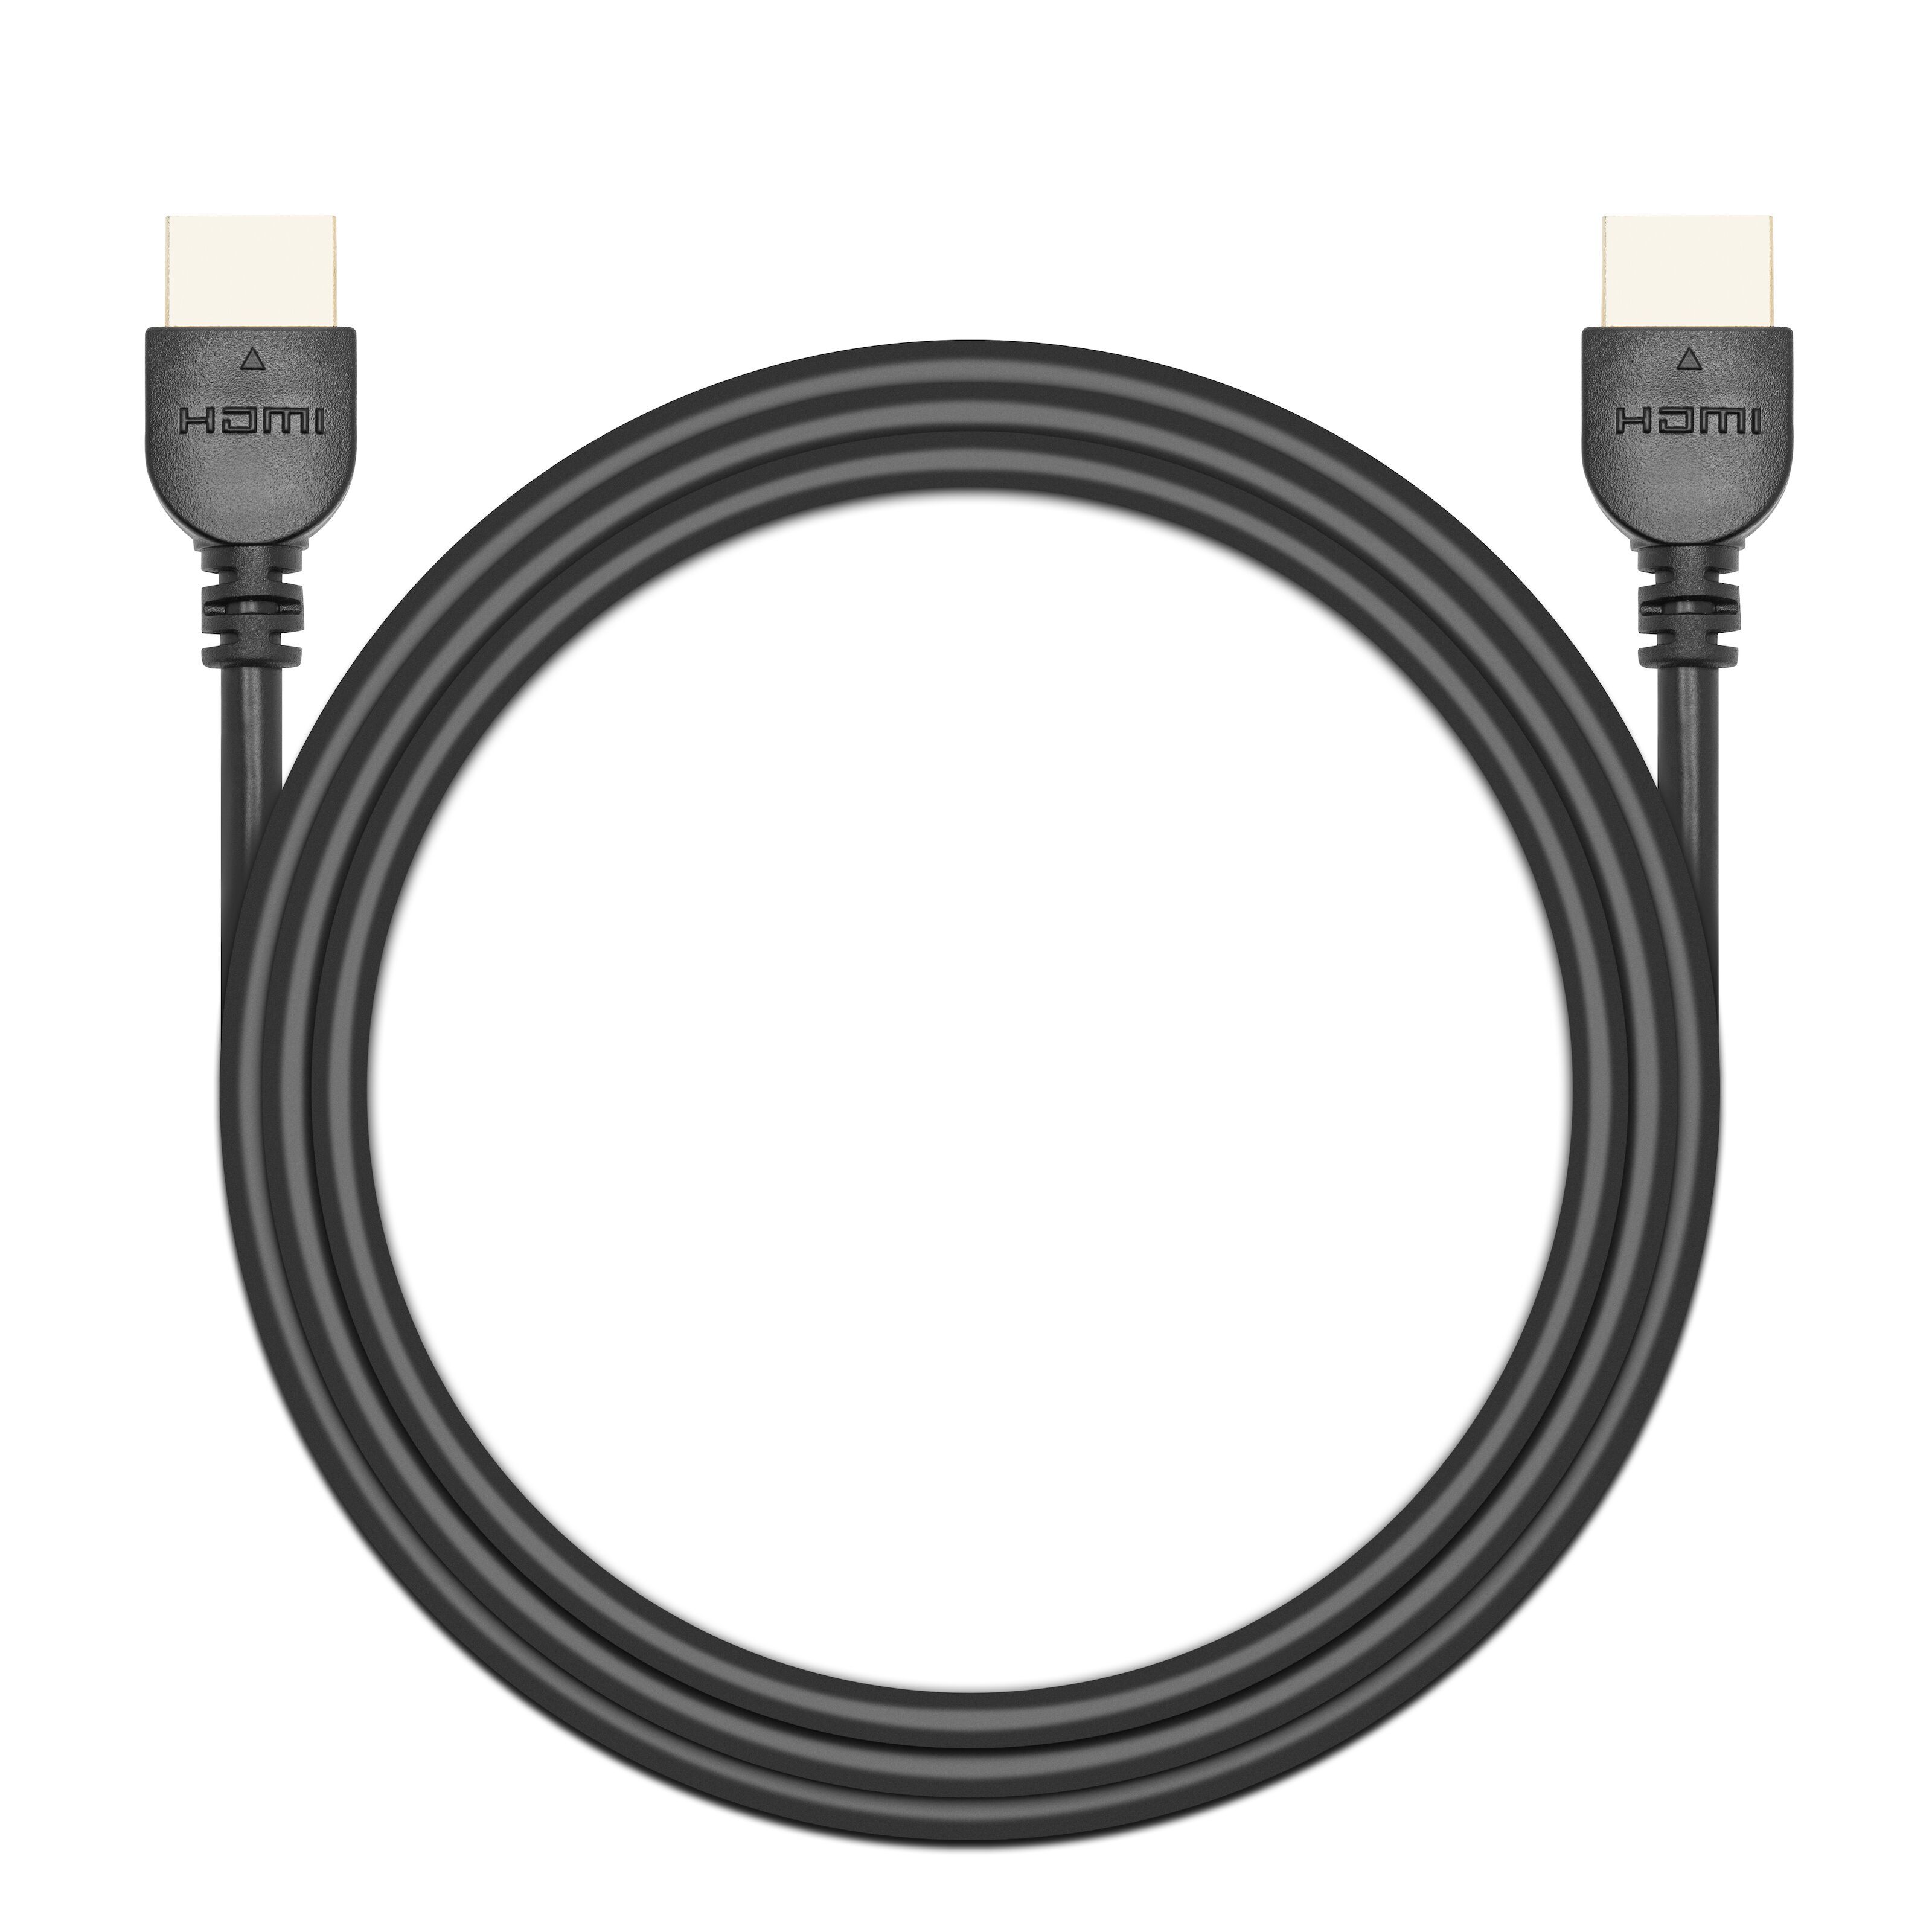 2 m Premium certifierad HDMI 2.0-kabel - Hög hastighets UHD 4K 60 Hz  HDMI-kabel med Ethernet - HDR10, ARC - UHD HDMI Video-sladd - För  UHD-skärmar